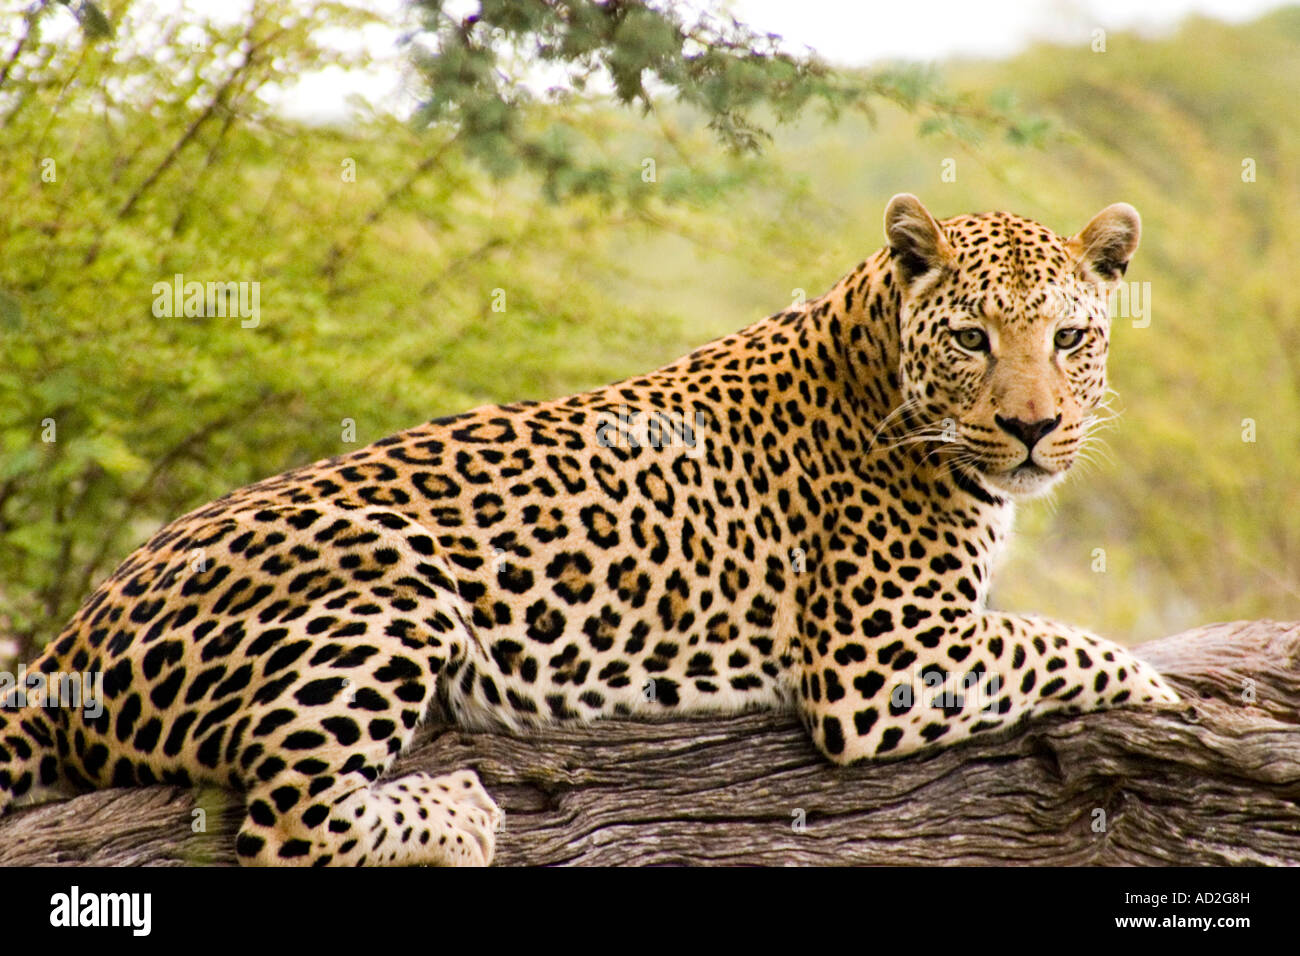 Leopard at Africat Foundation Okonjima Namibia Africa Stock Photo